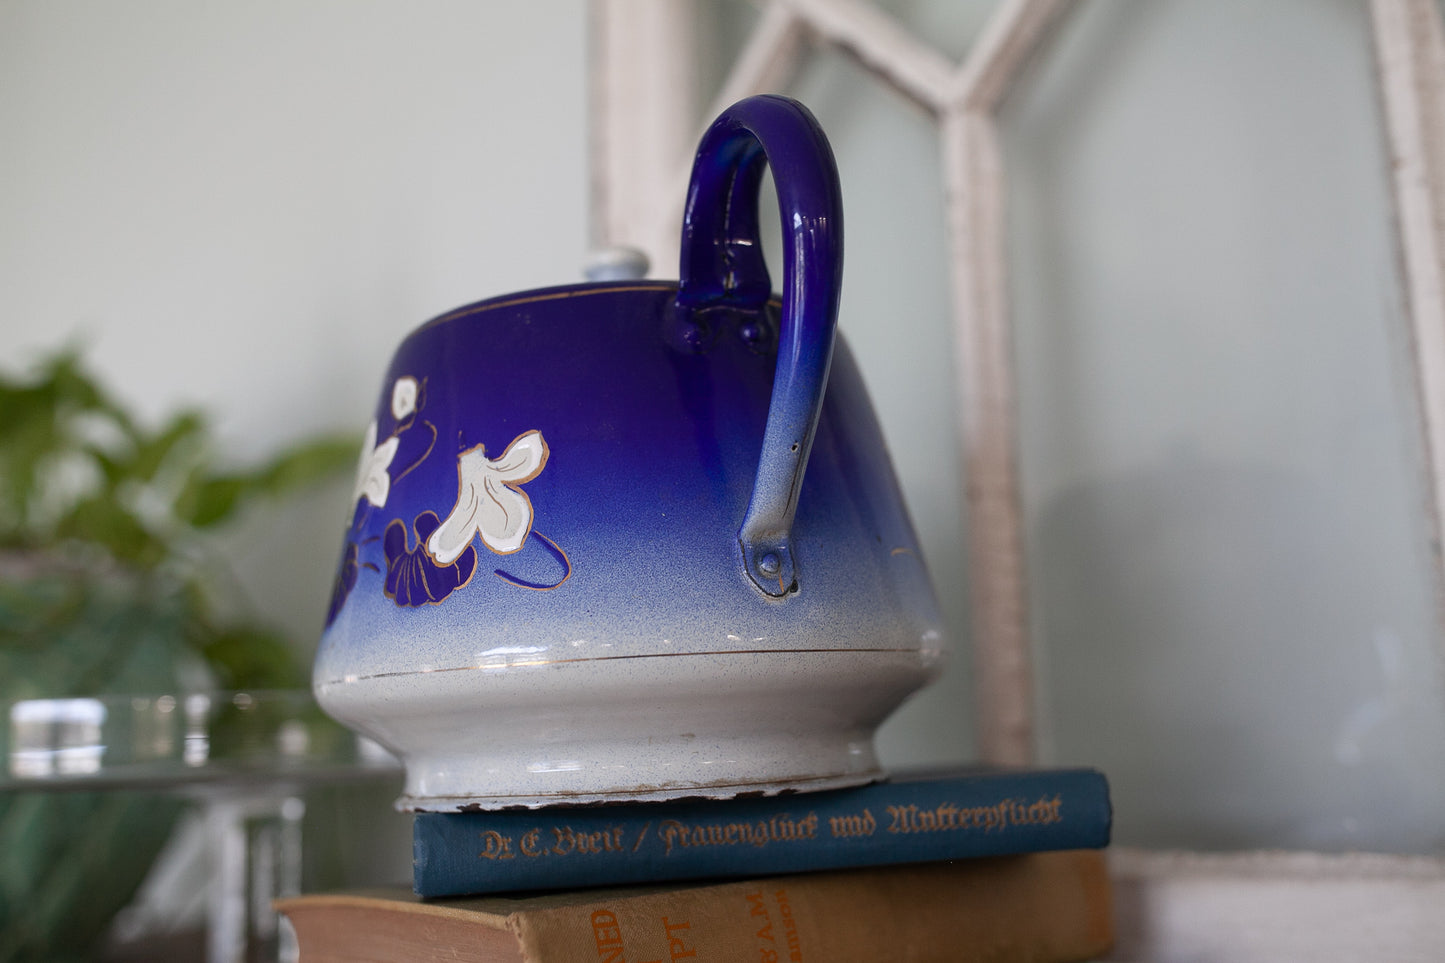 Antique Enamelware Teapot - Blue and White Teapot